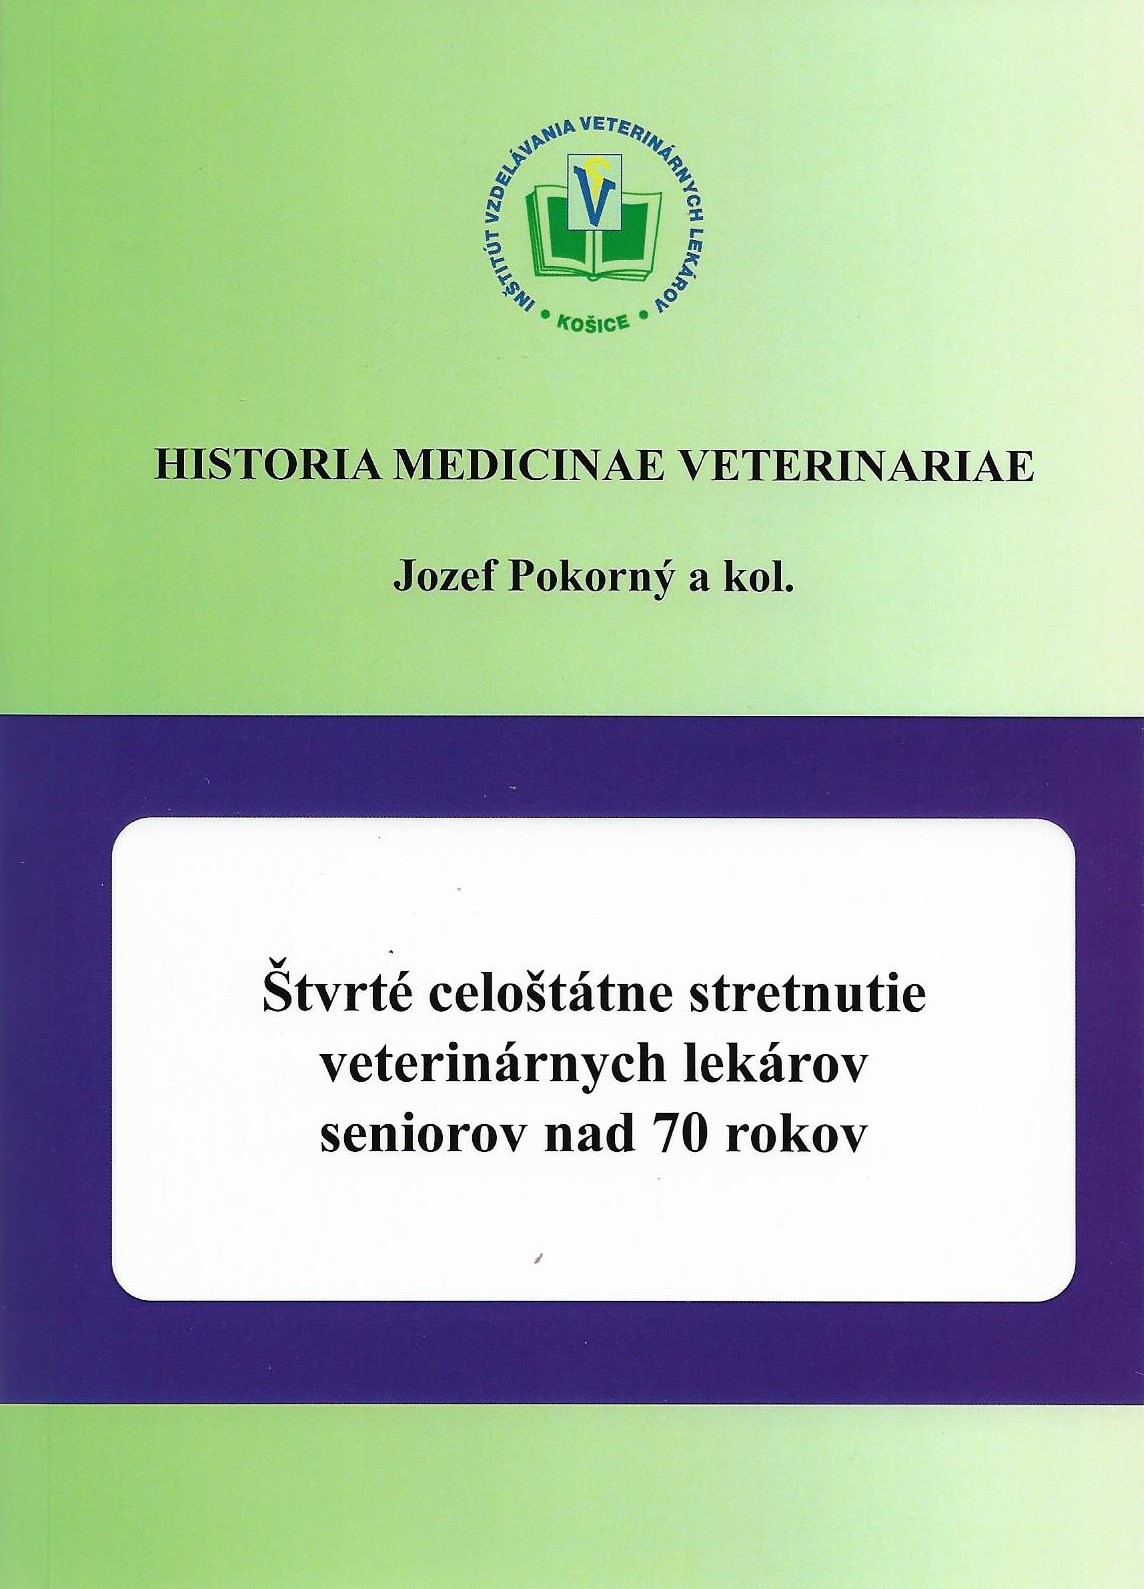 Jozef Pokorný a kol. , Štvrté celoštátne stretnutie veterinárnych lekárov seniorov nad 70 rokov